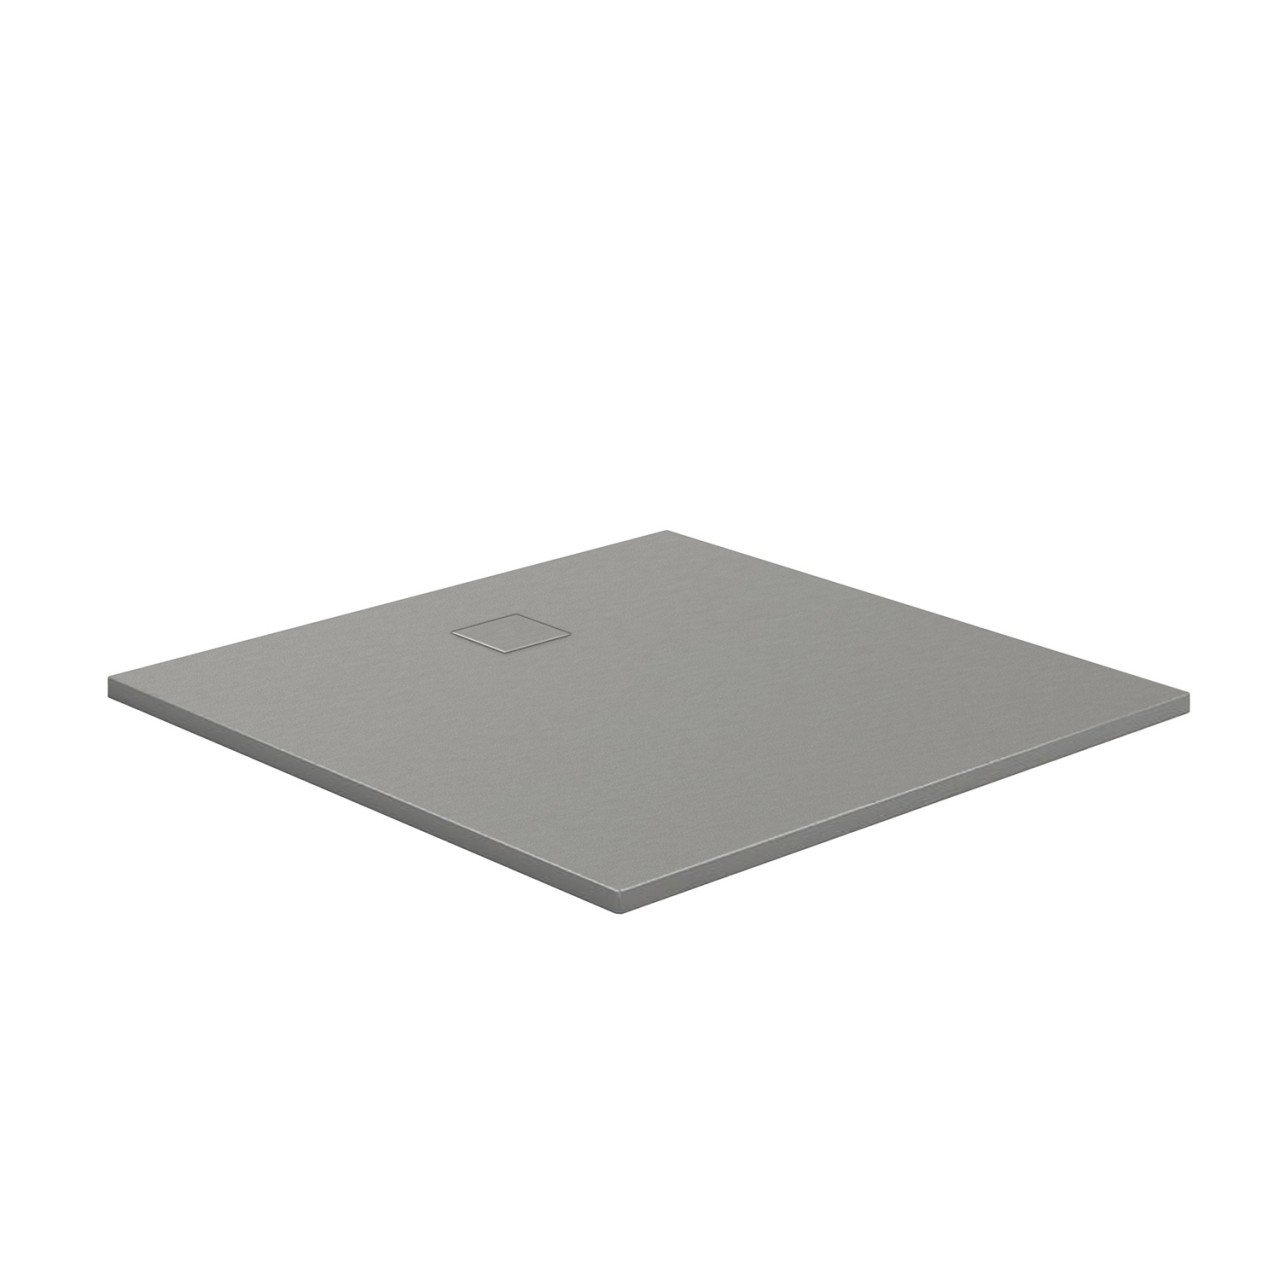 HSK Marmor-Polymer-Duschwanne, 120 x 120 cm, Steinoptik, Farbe: weiss mit Antislip-Beschichtung 5825012-A-weiss von HSK Duschkabinenbau KG